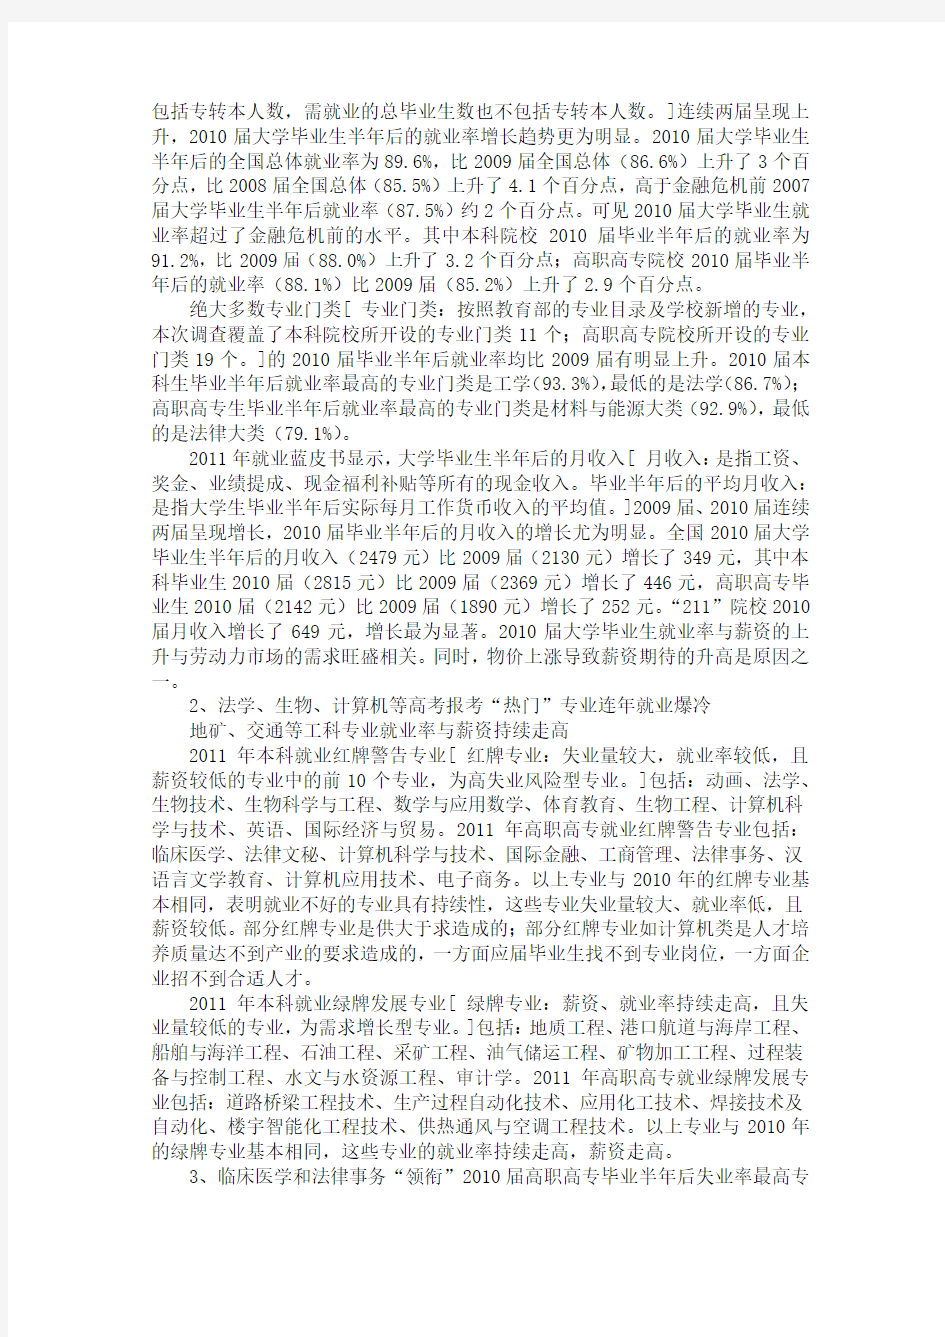 麦可思2011年中国大学生就业报告 完全详细版